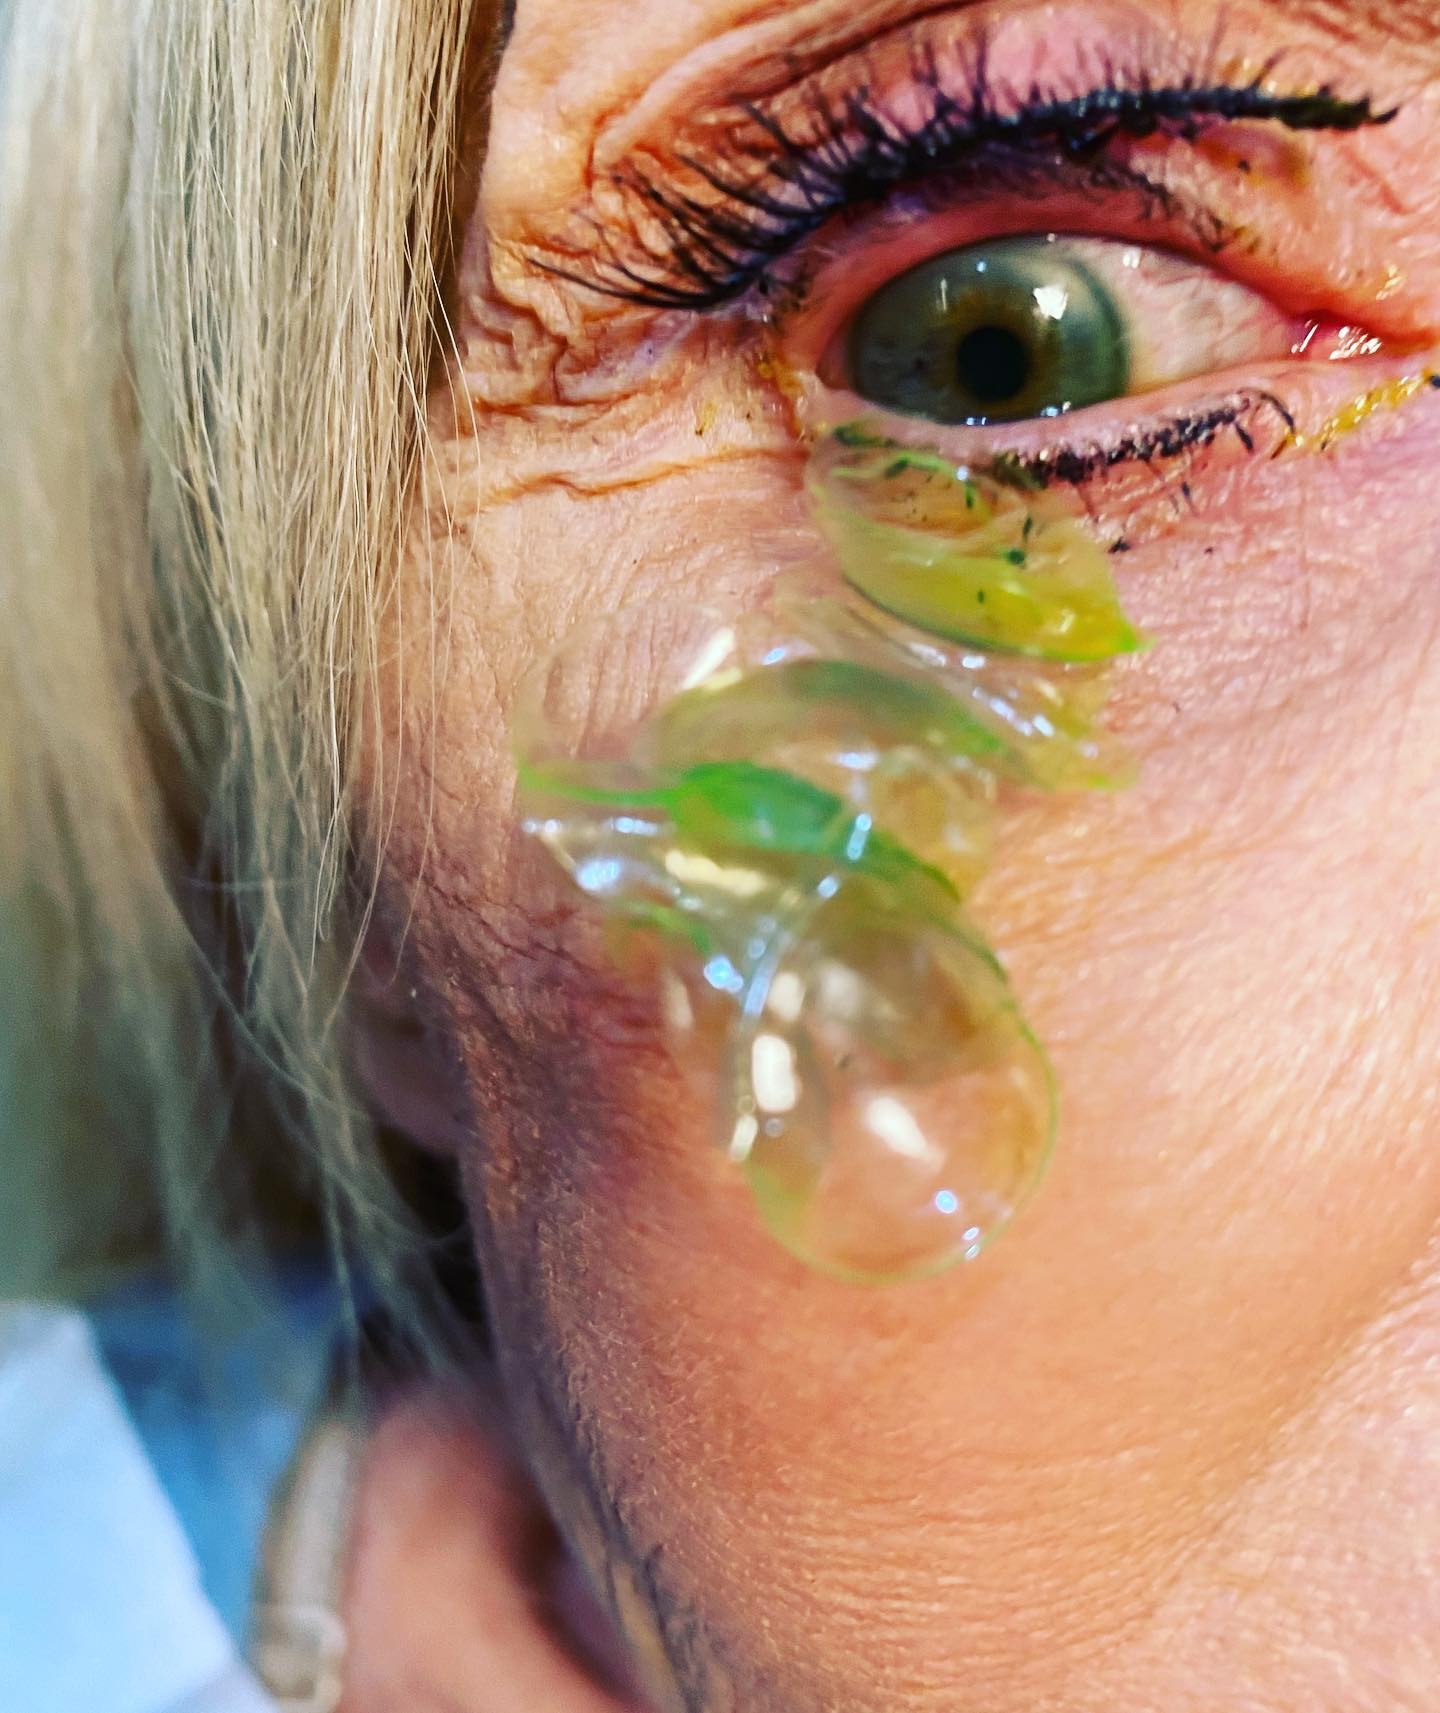 Oftamologista remove 23 lentes de contato perdidas em olho de paciente (Foto: Katerina Kurteeva/ Facebook)